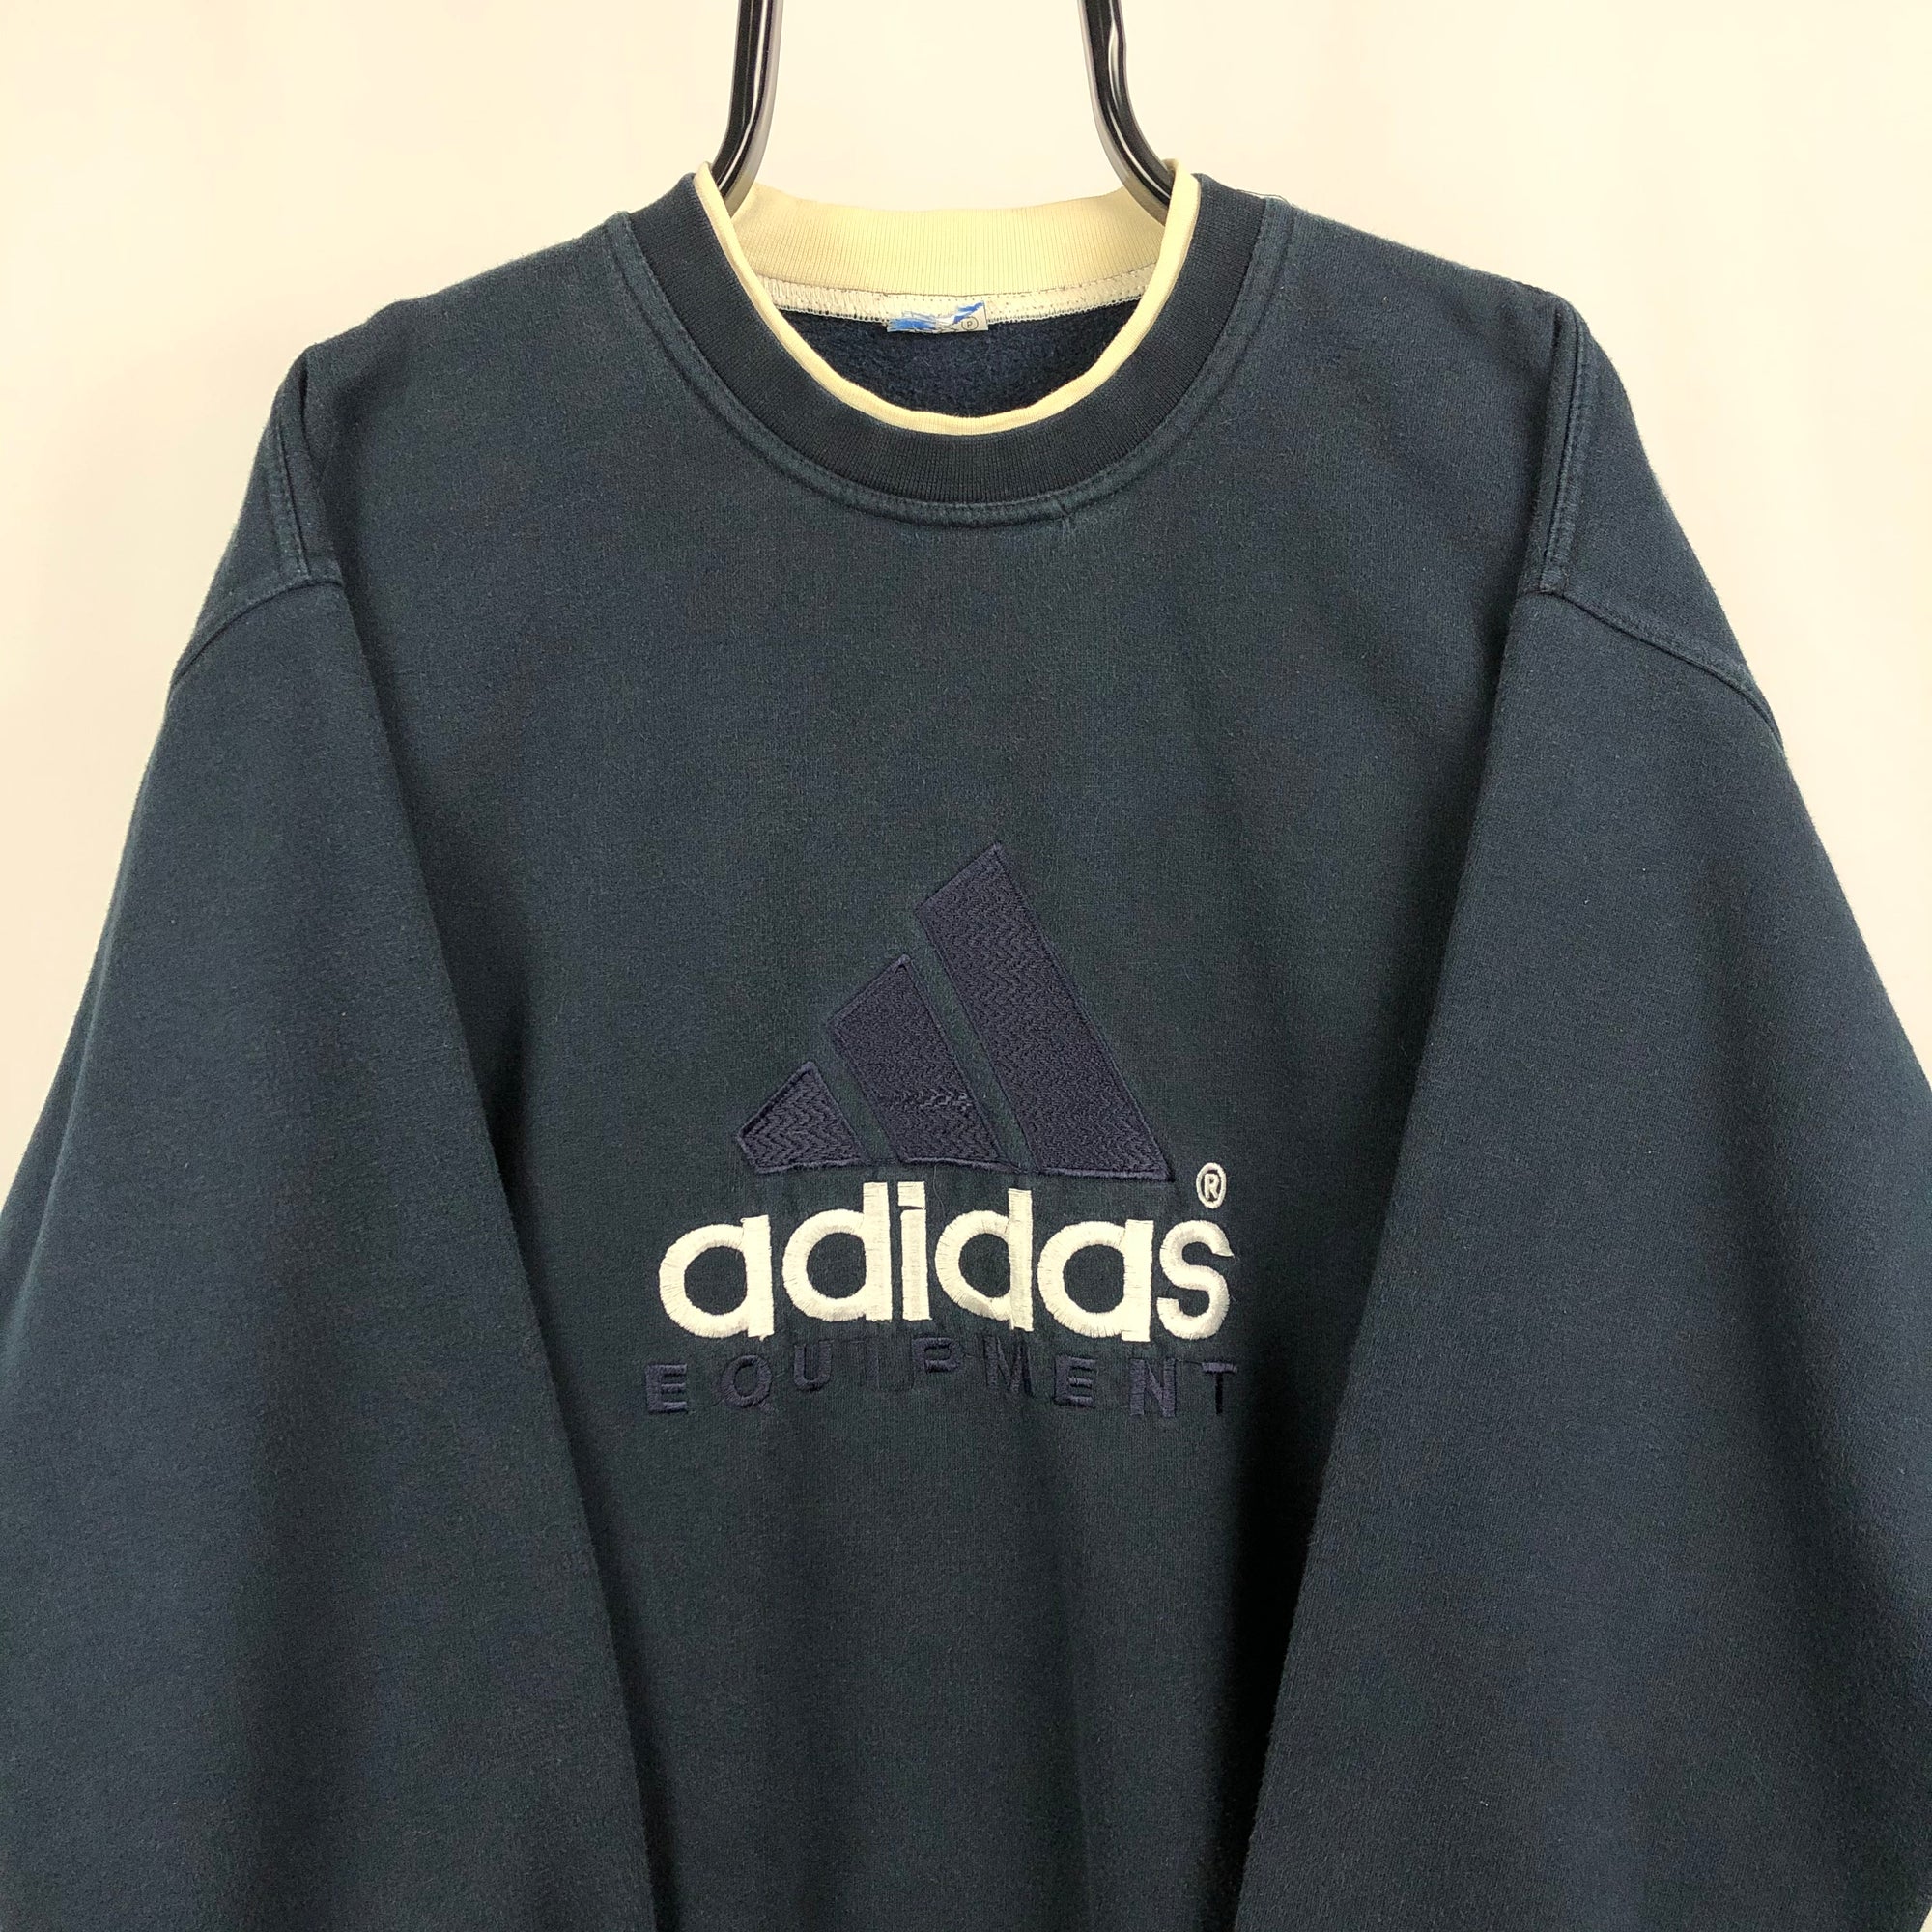 Vintage 90s Adidas Equipment Sweatshirt in Navy - Men's Large/Women's XL